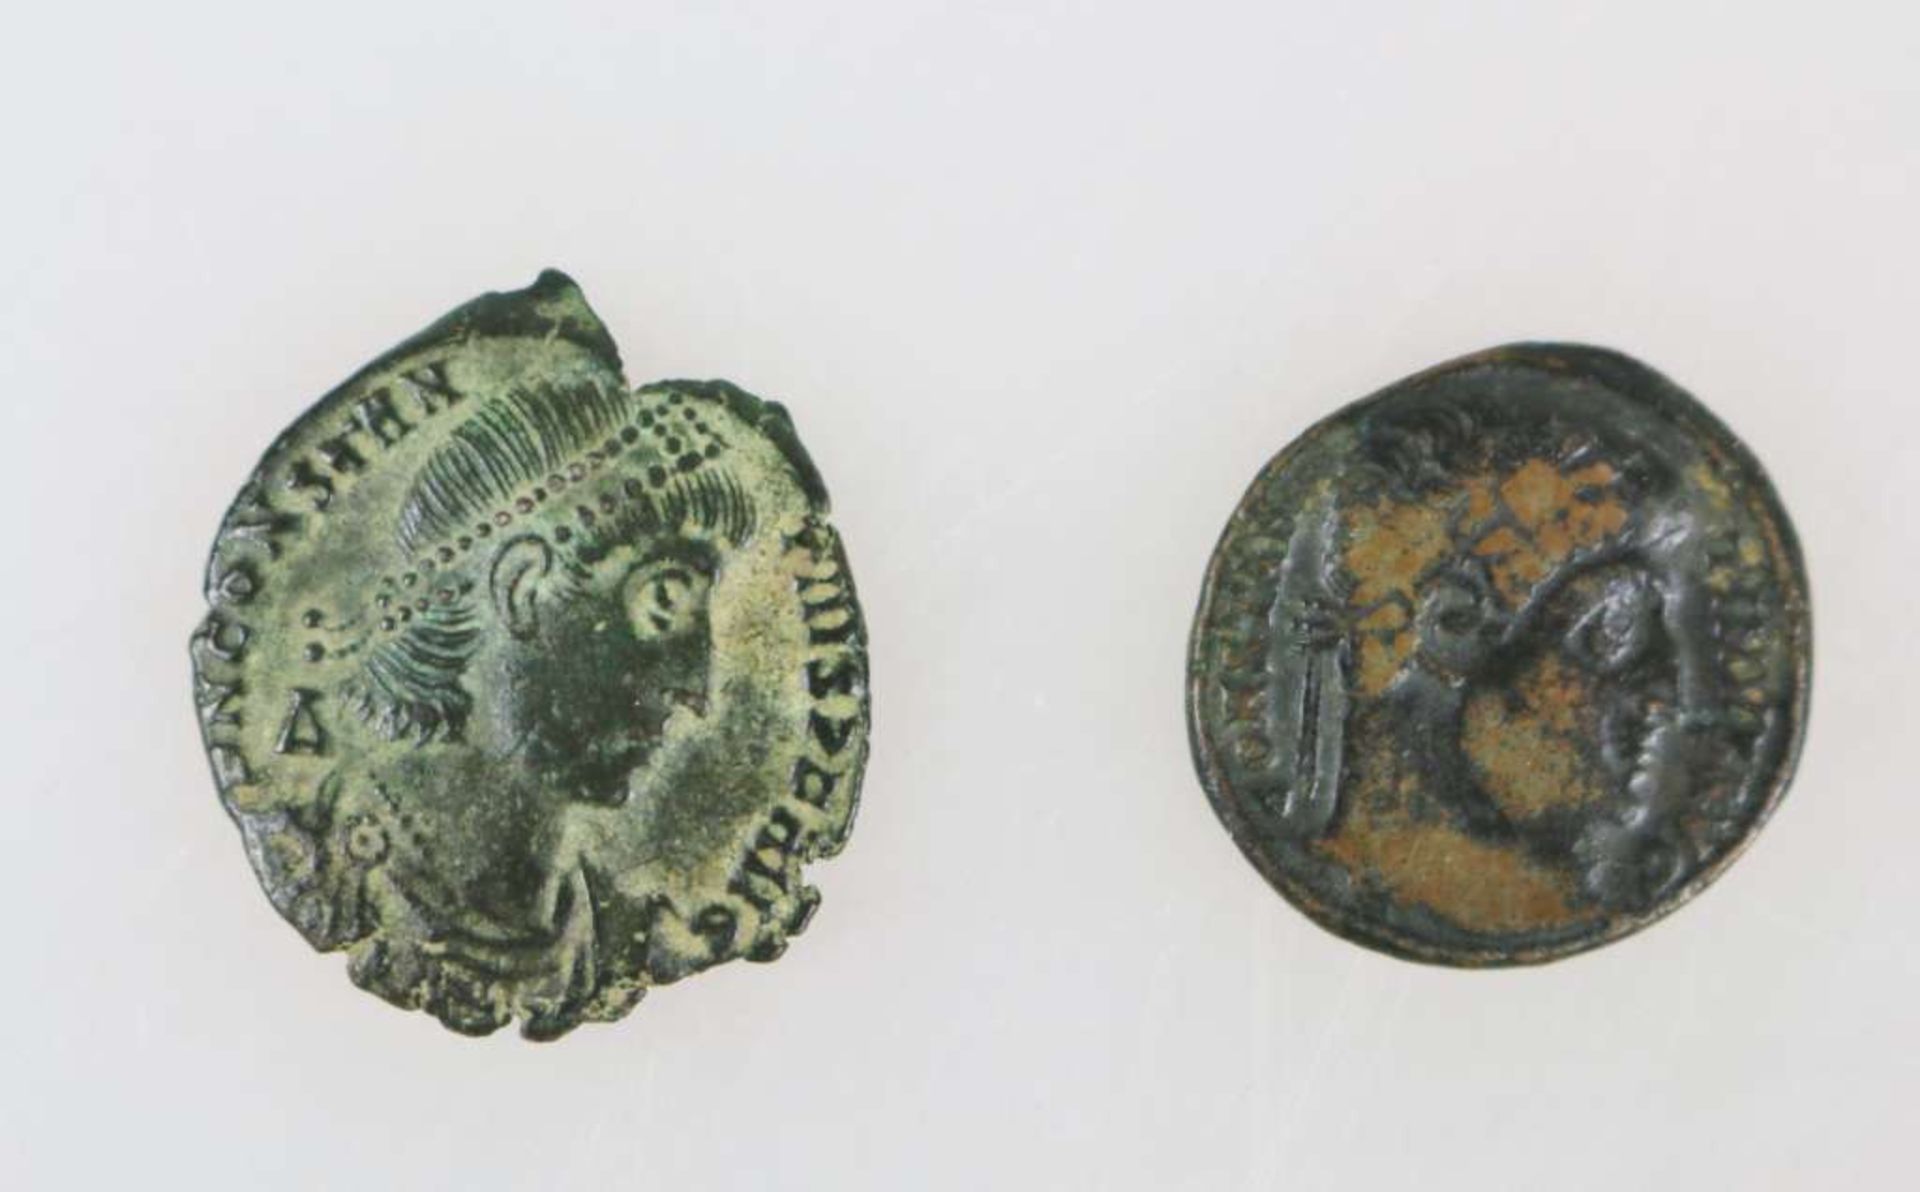 2 römische Münzen, ca. 300 - 400 n. Chr., Konstantin der Große und Konstantin II., starke